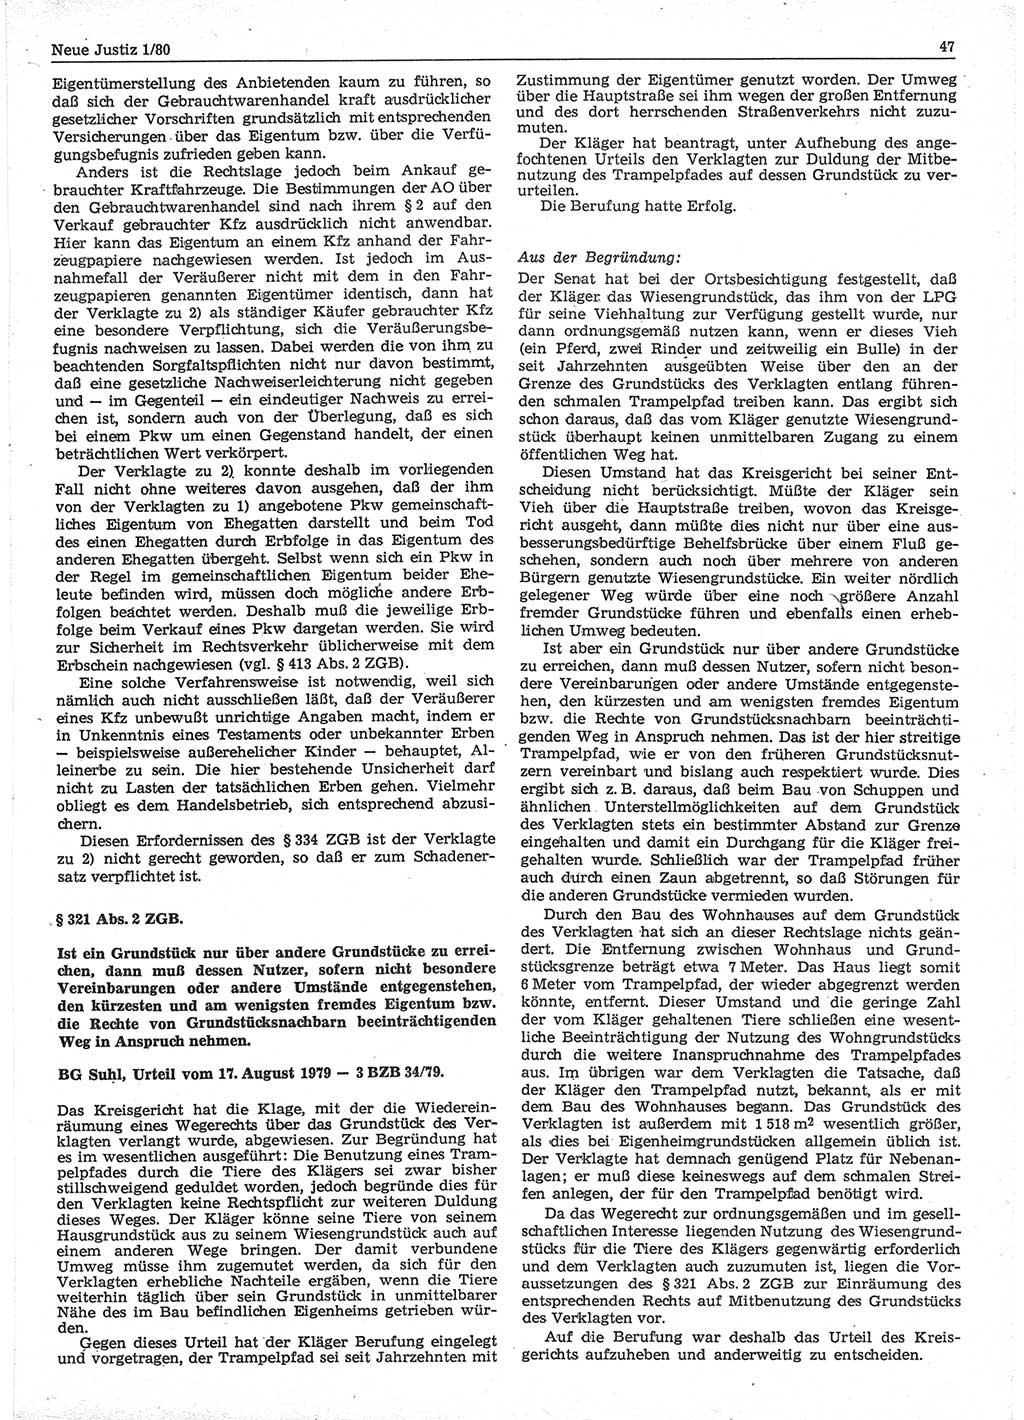 Neue Justiz (NJ), Zeitschrift für sozialistisches Recht und Gesetzlichkeit [Deutsche Demokratische Republik (DDR)], 34. Jahrgang 1980, Seite 47 (NJ DDR 1980, S. 47)